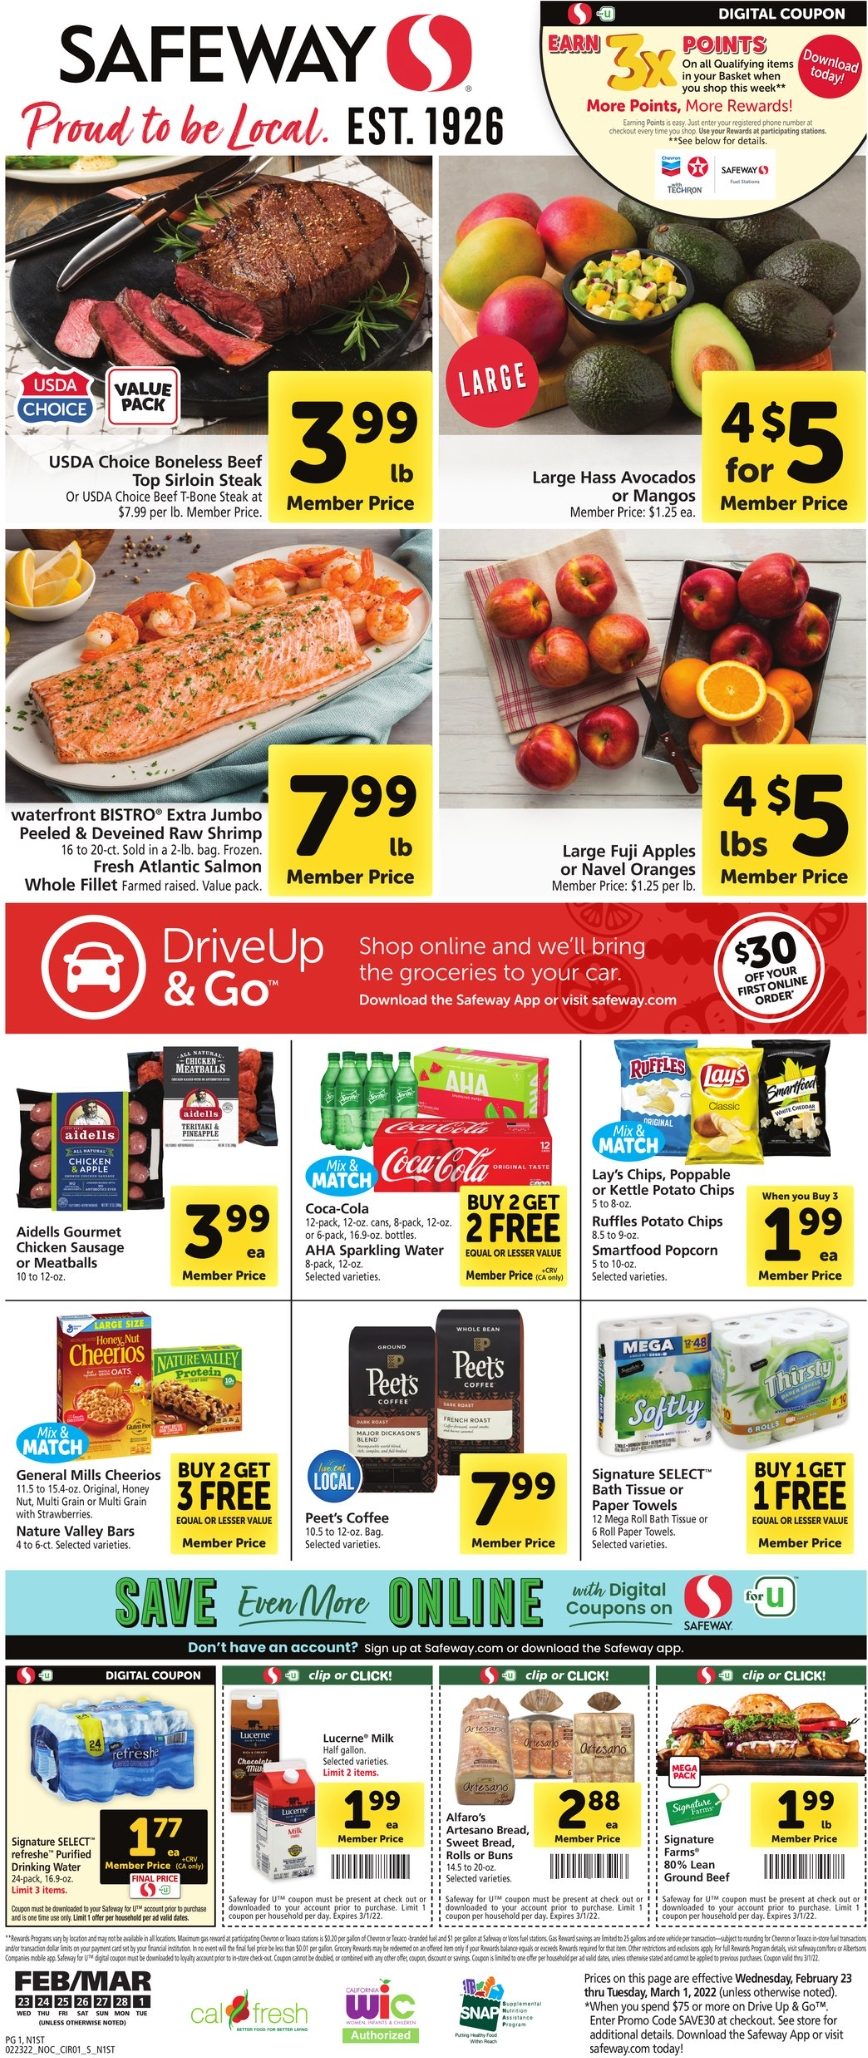 Safeway Weekly Ad Feb 23 - Mar 1, 2022 - WeeklyAds2